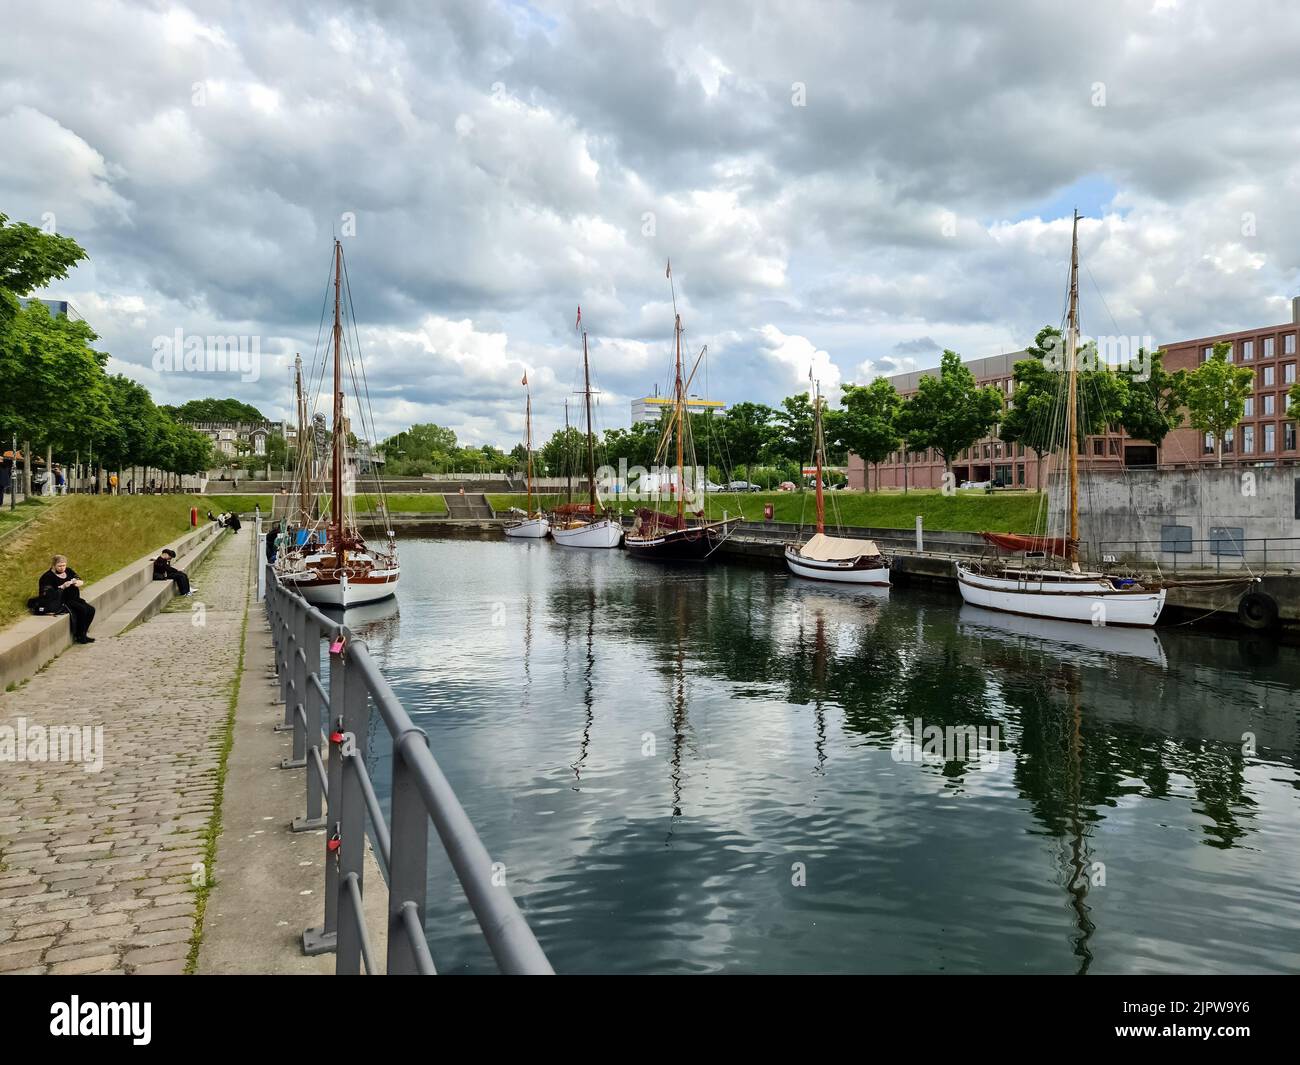 Ein schöner Blick auf den Hafen mit Segelschiffen und Besuchern am Kai Stockfoto